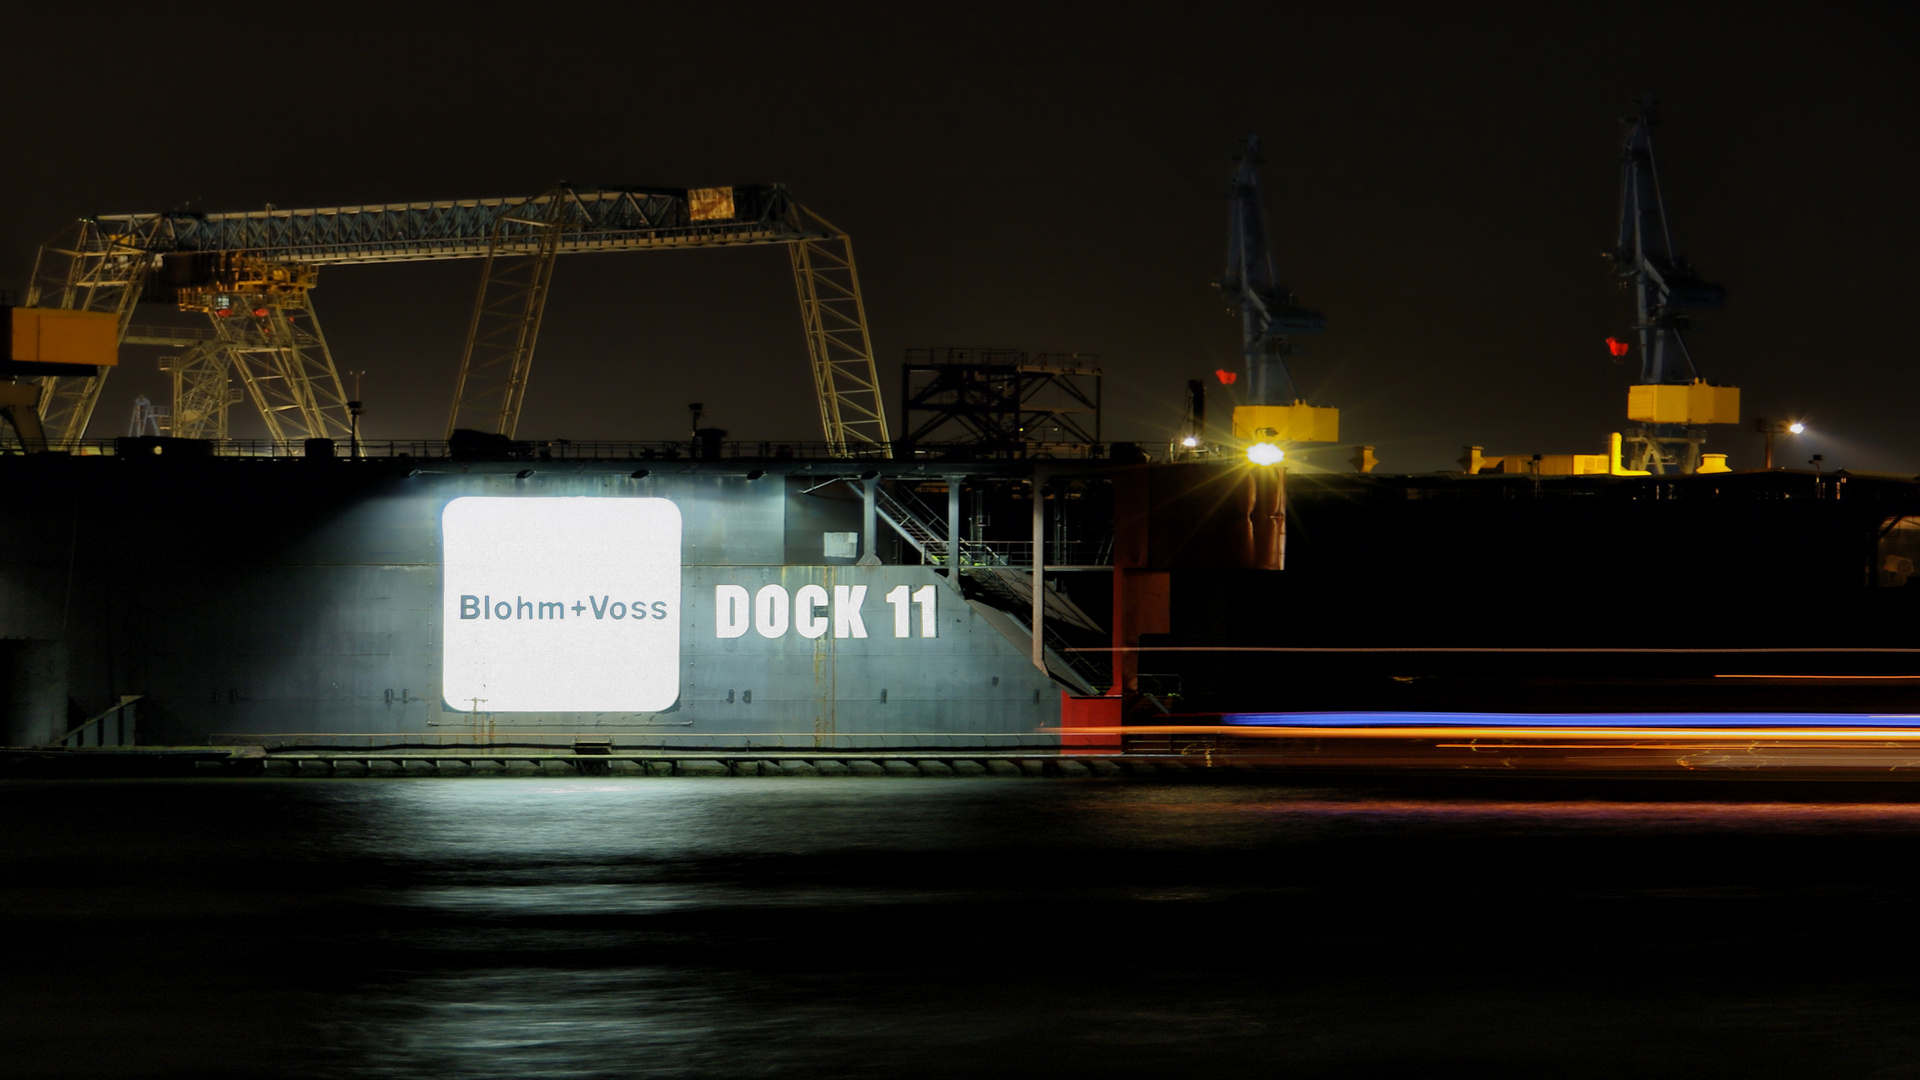 Dock 11